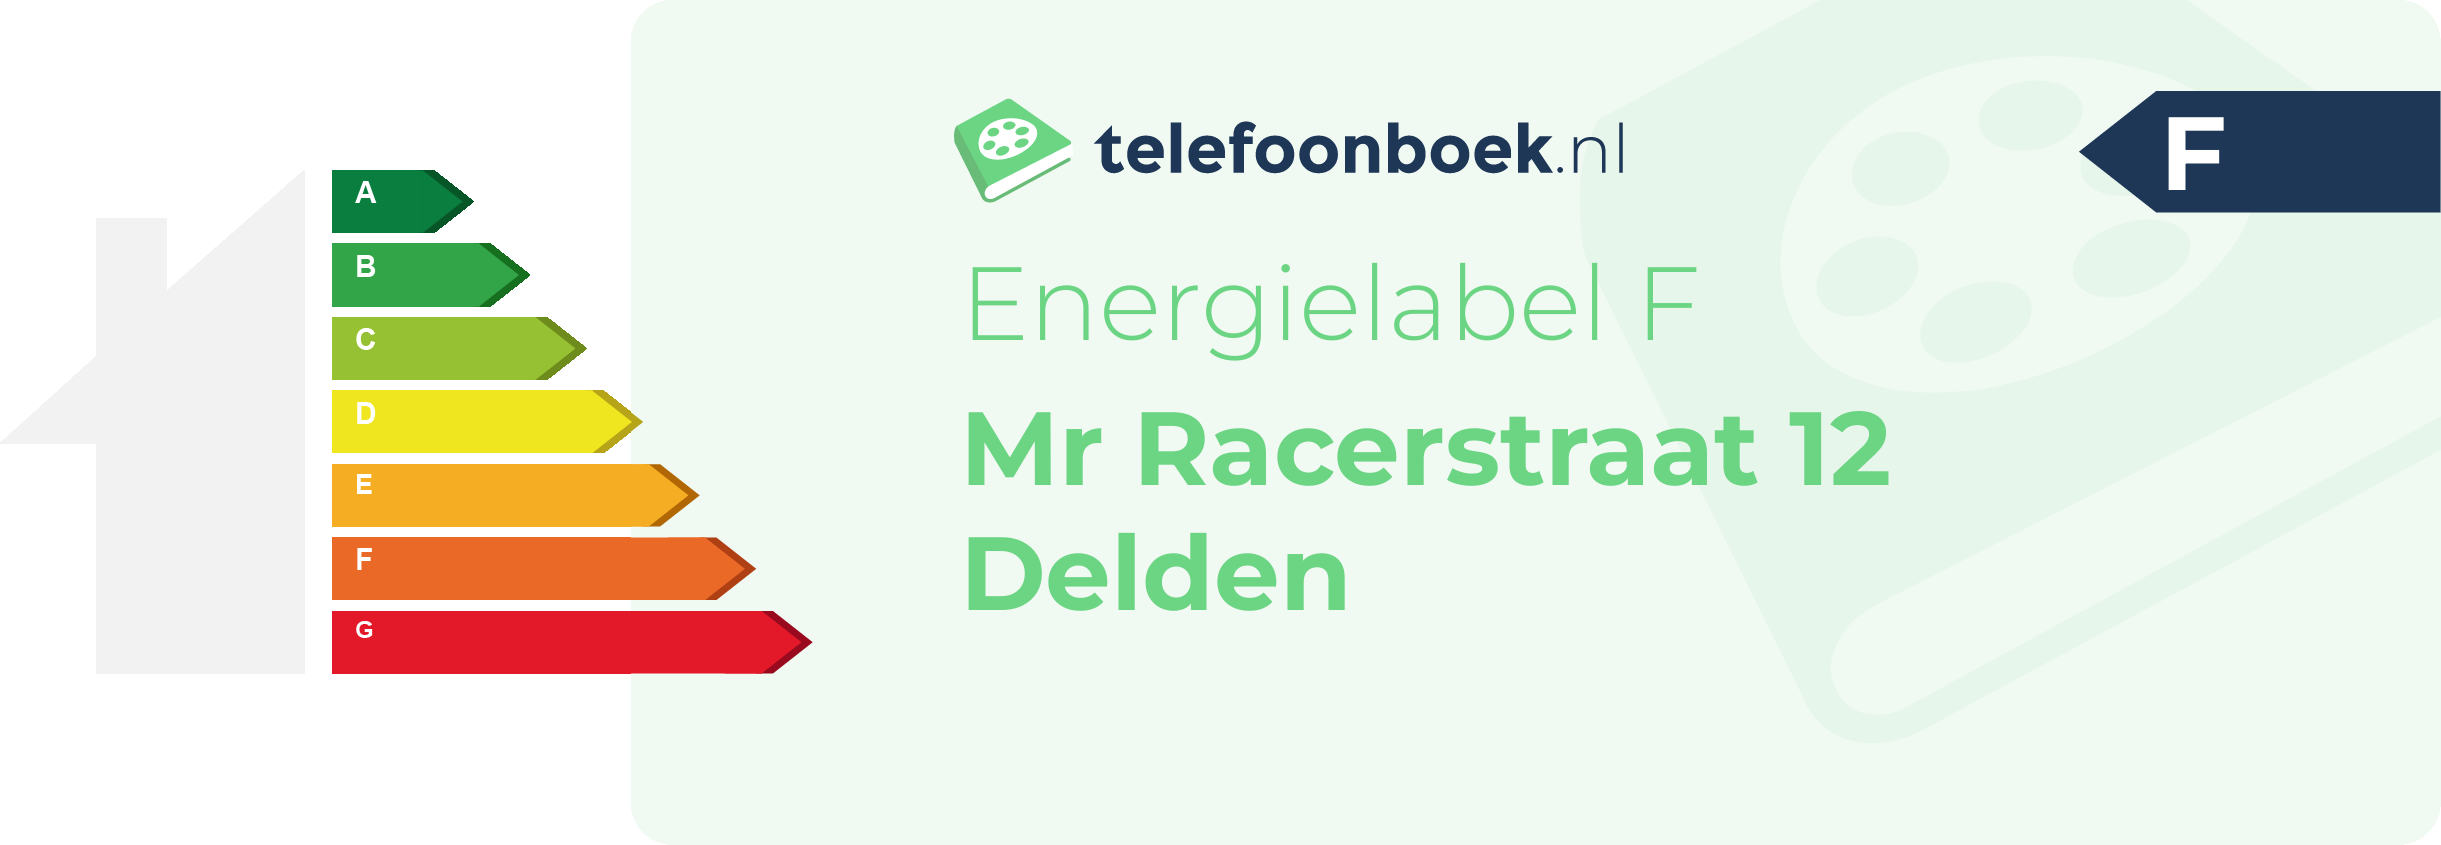 Energielabel Mr Racerstraat 12 Delden